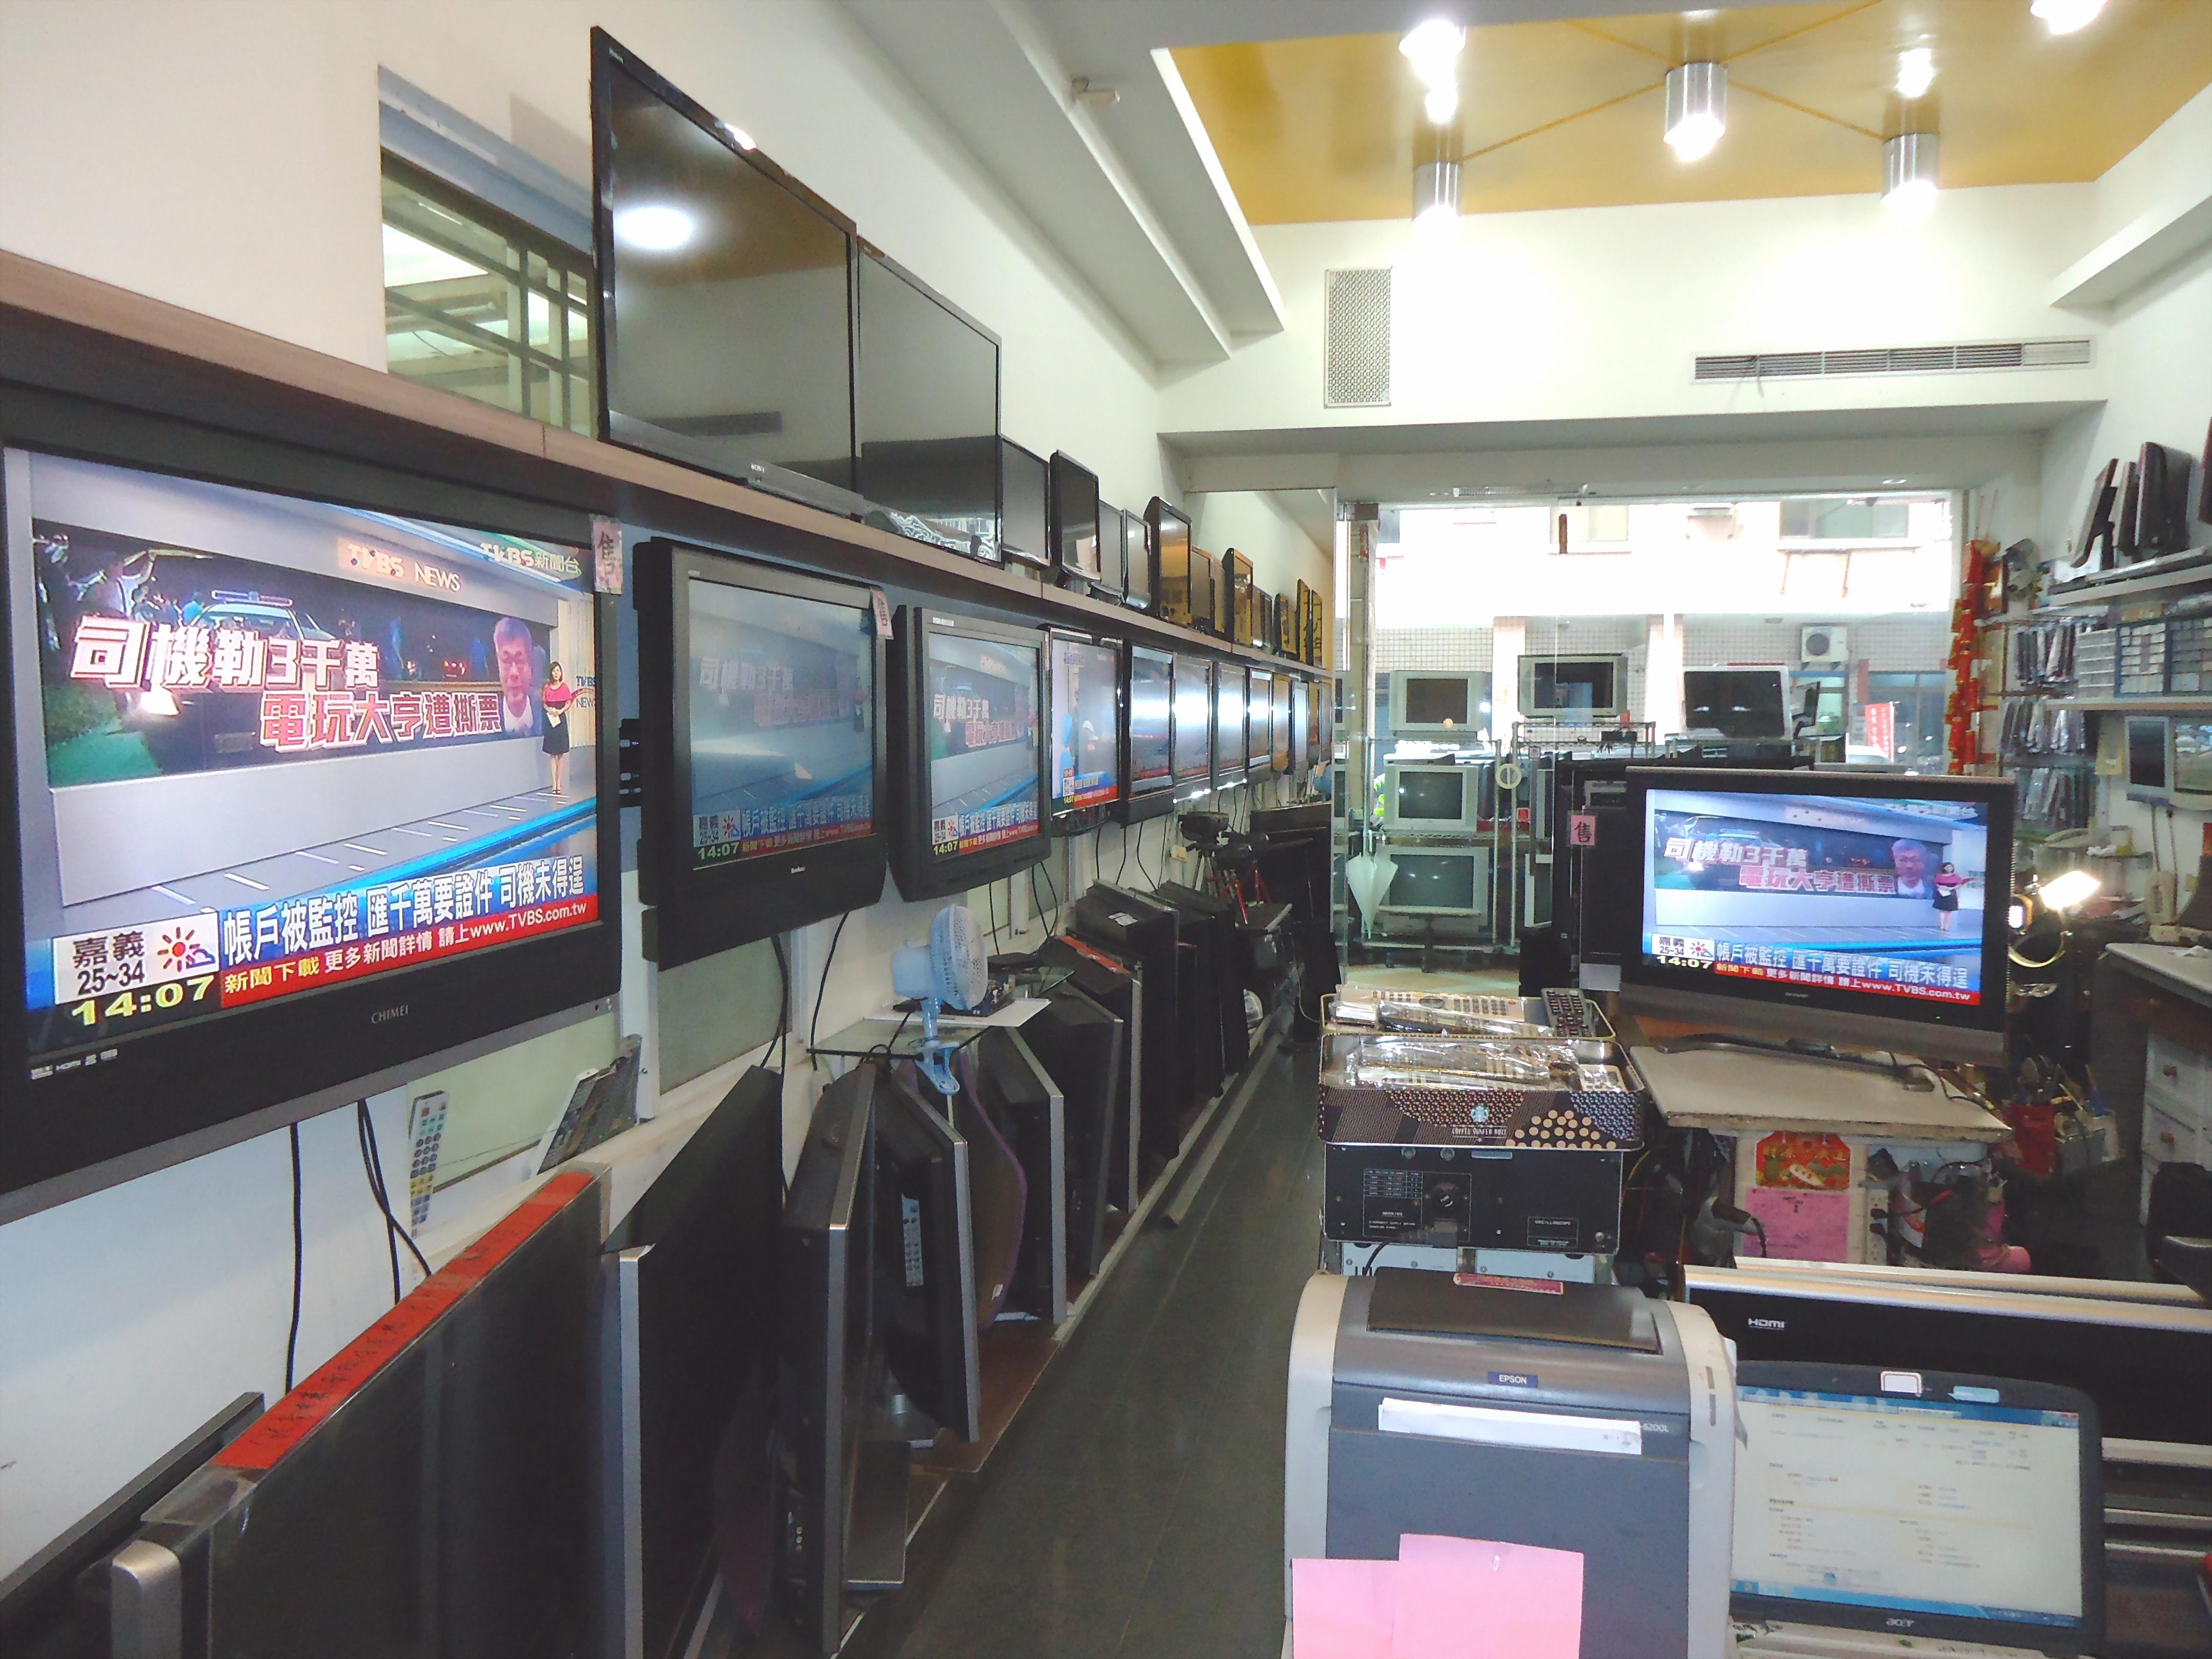 高雄市縣-北高電業-液晶電視電漿電視維修傳統電視修理